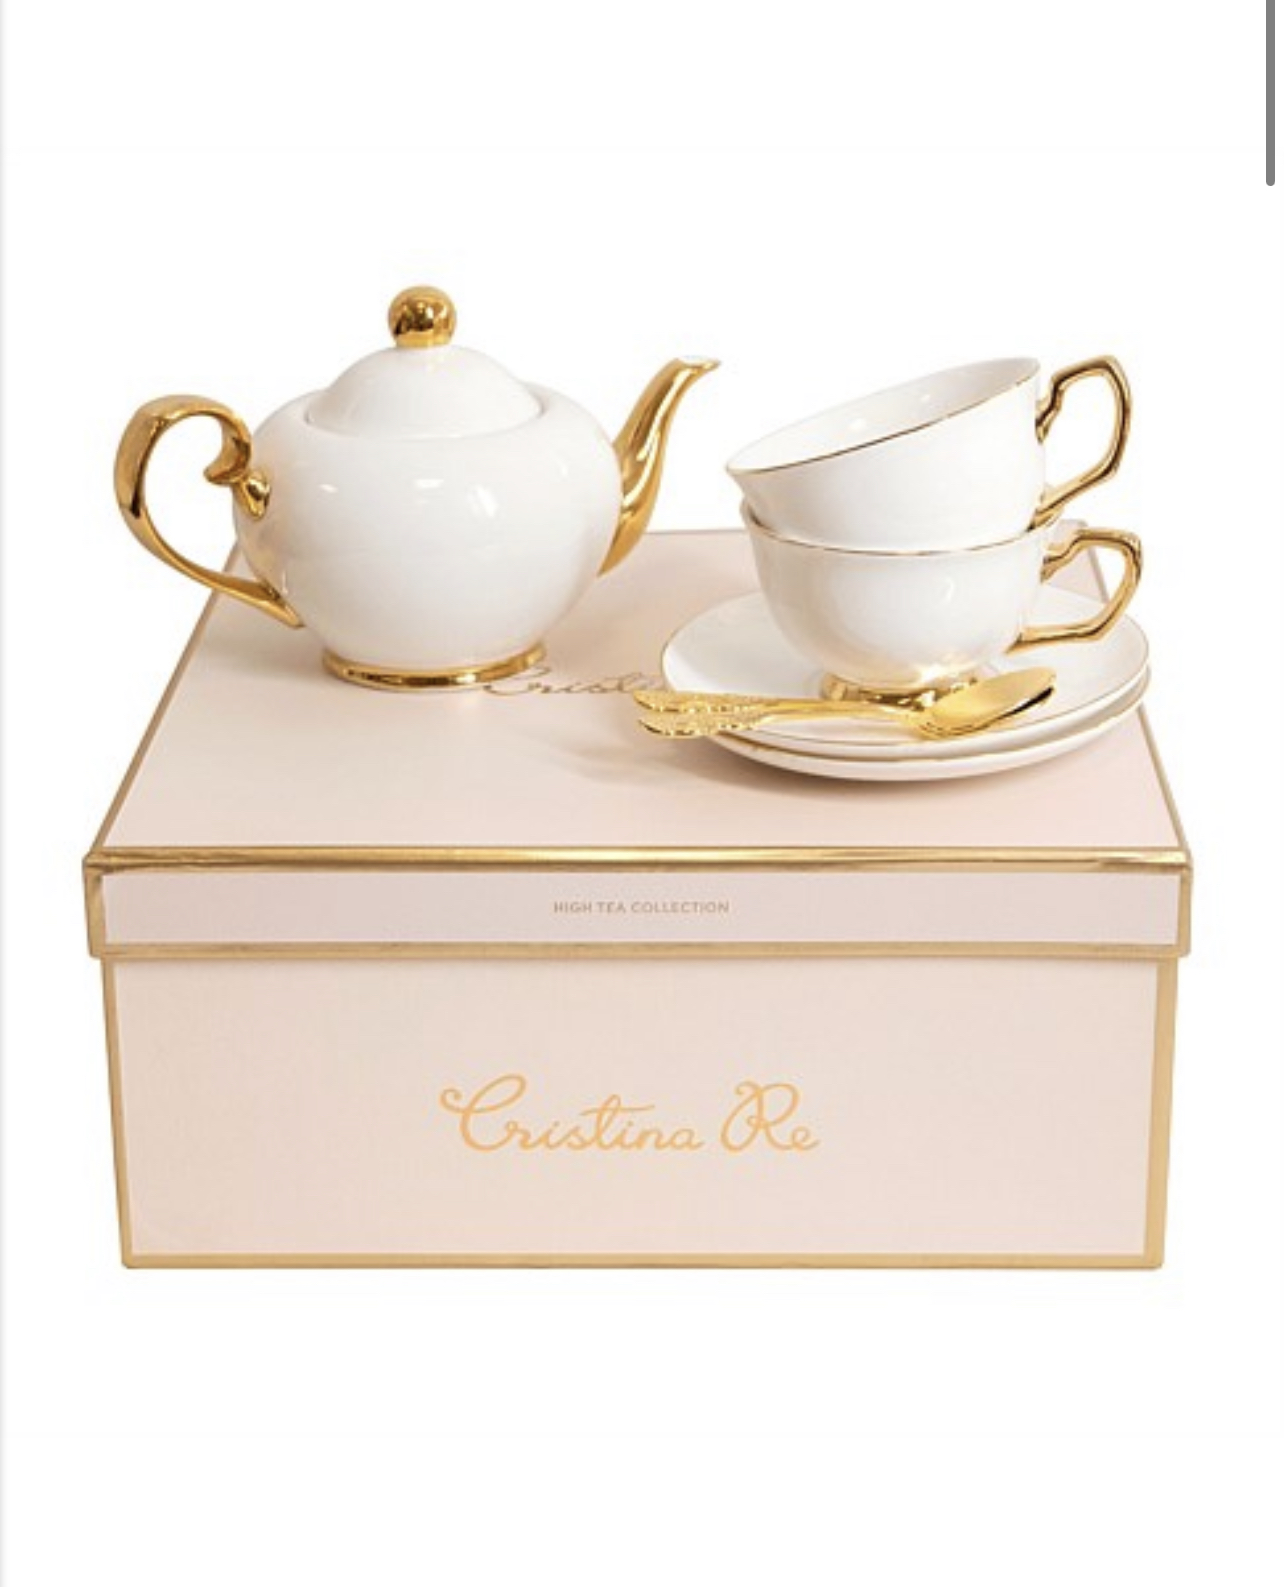 Cristina Re Teapot and Teacup set